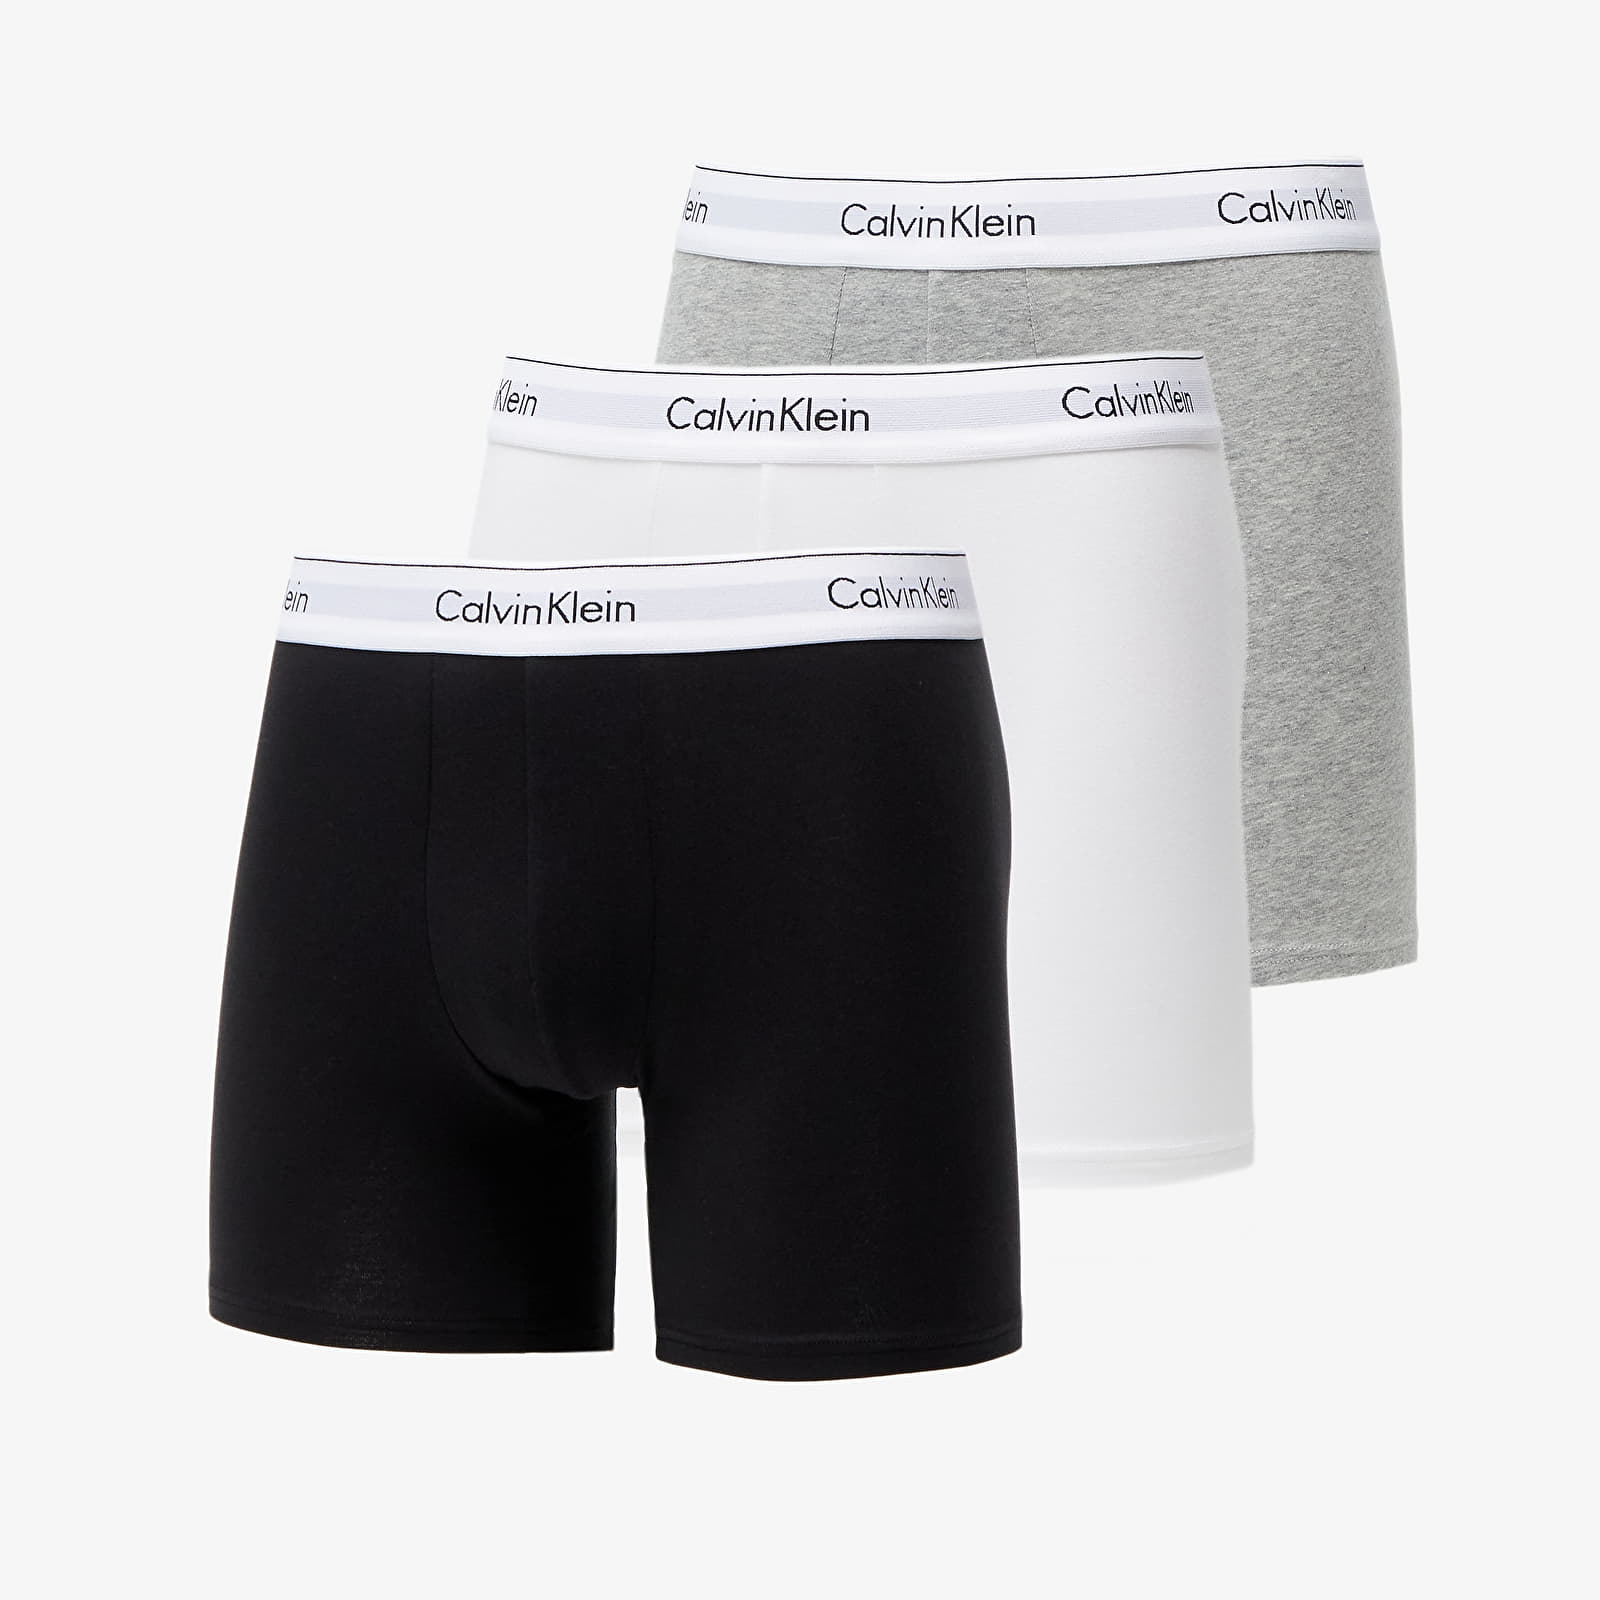 Boxershorts Calvin Klein Modern Cotton Stretch Boxer Brief 3-Pack Black/ White/ Grey Heather